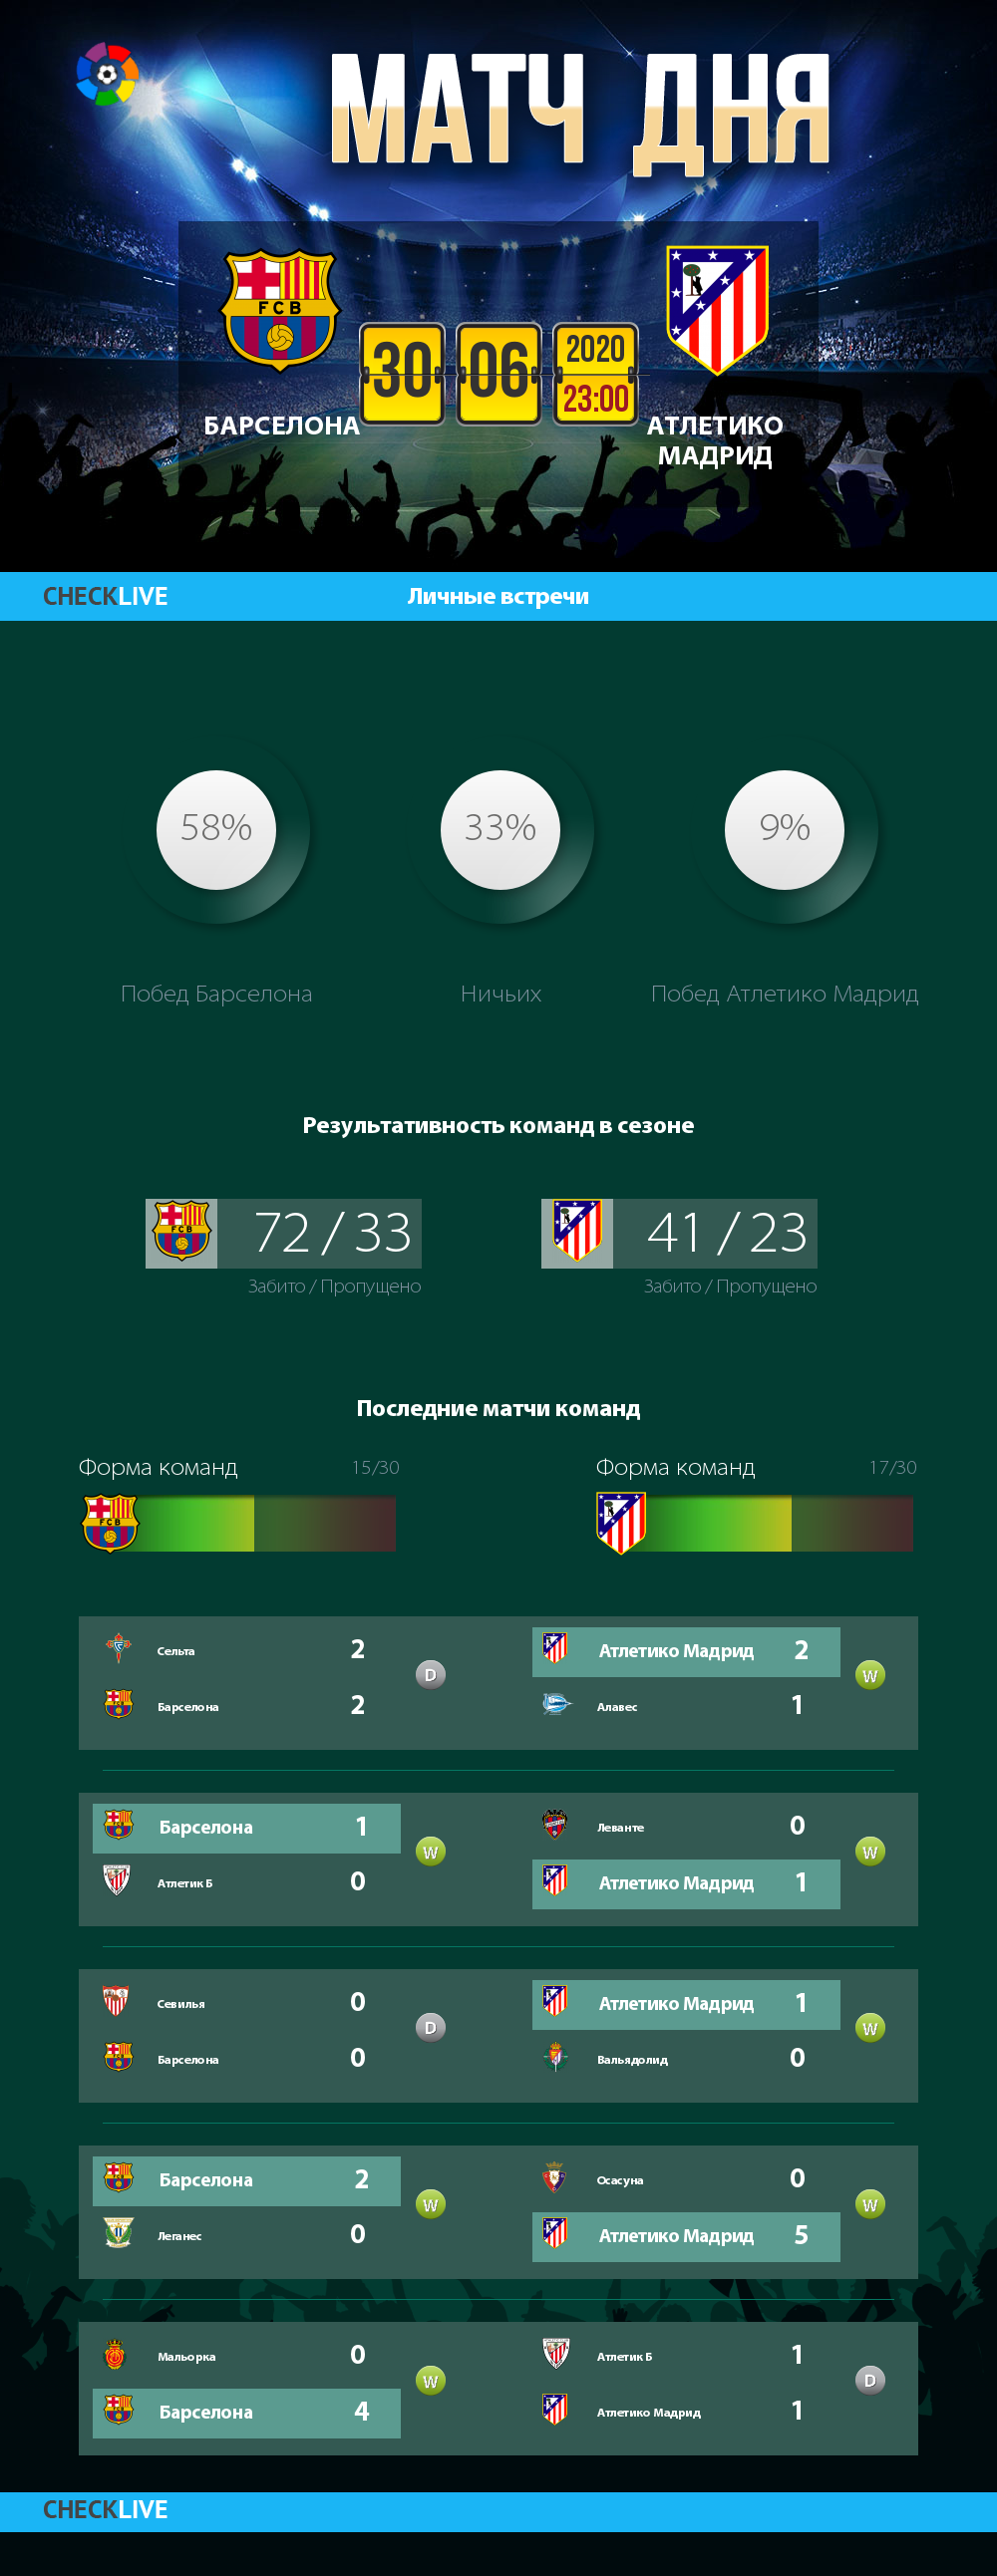 Инфографика Барселона и Атлетико Мадрид матч дня 30.06.2020